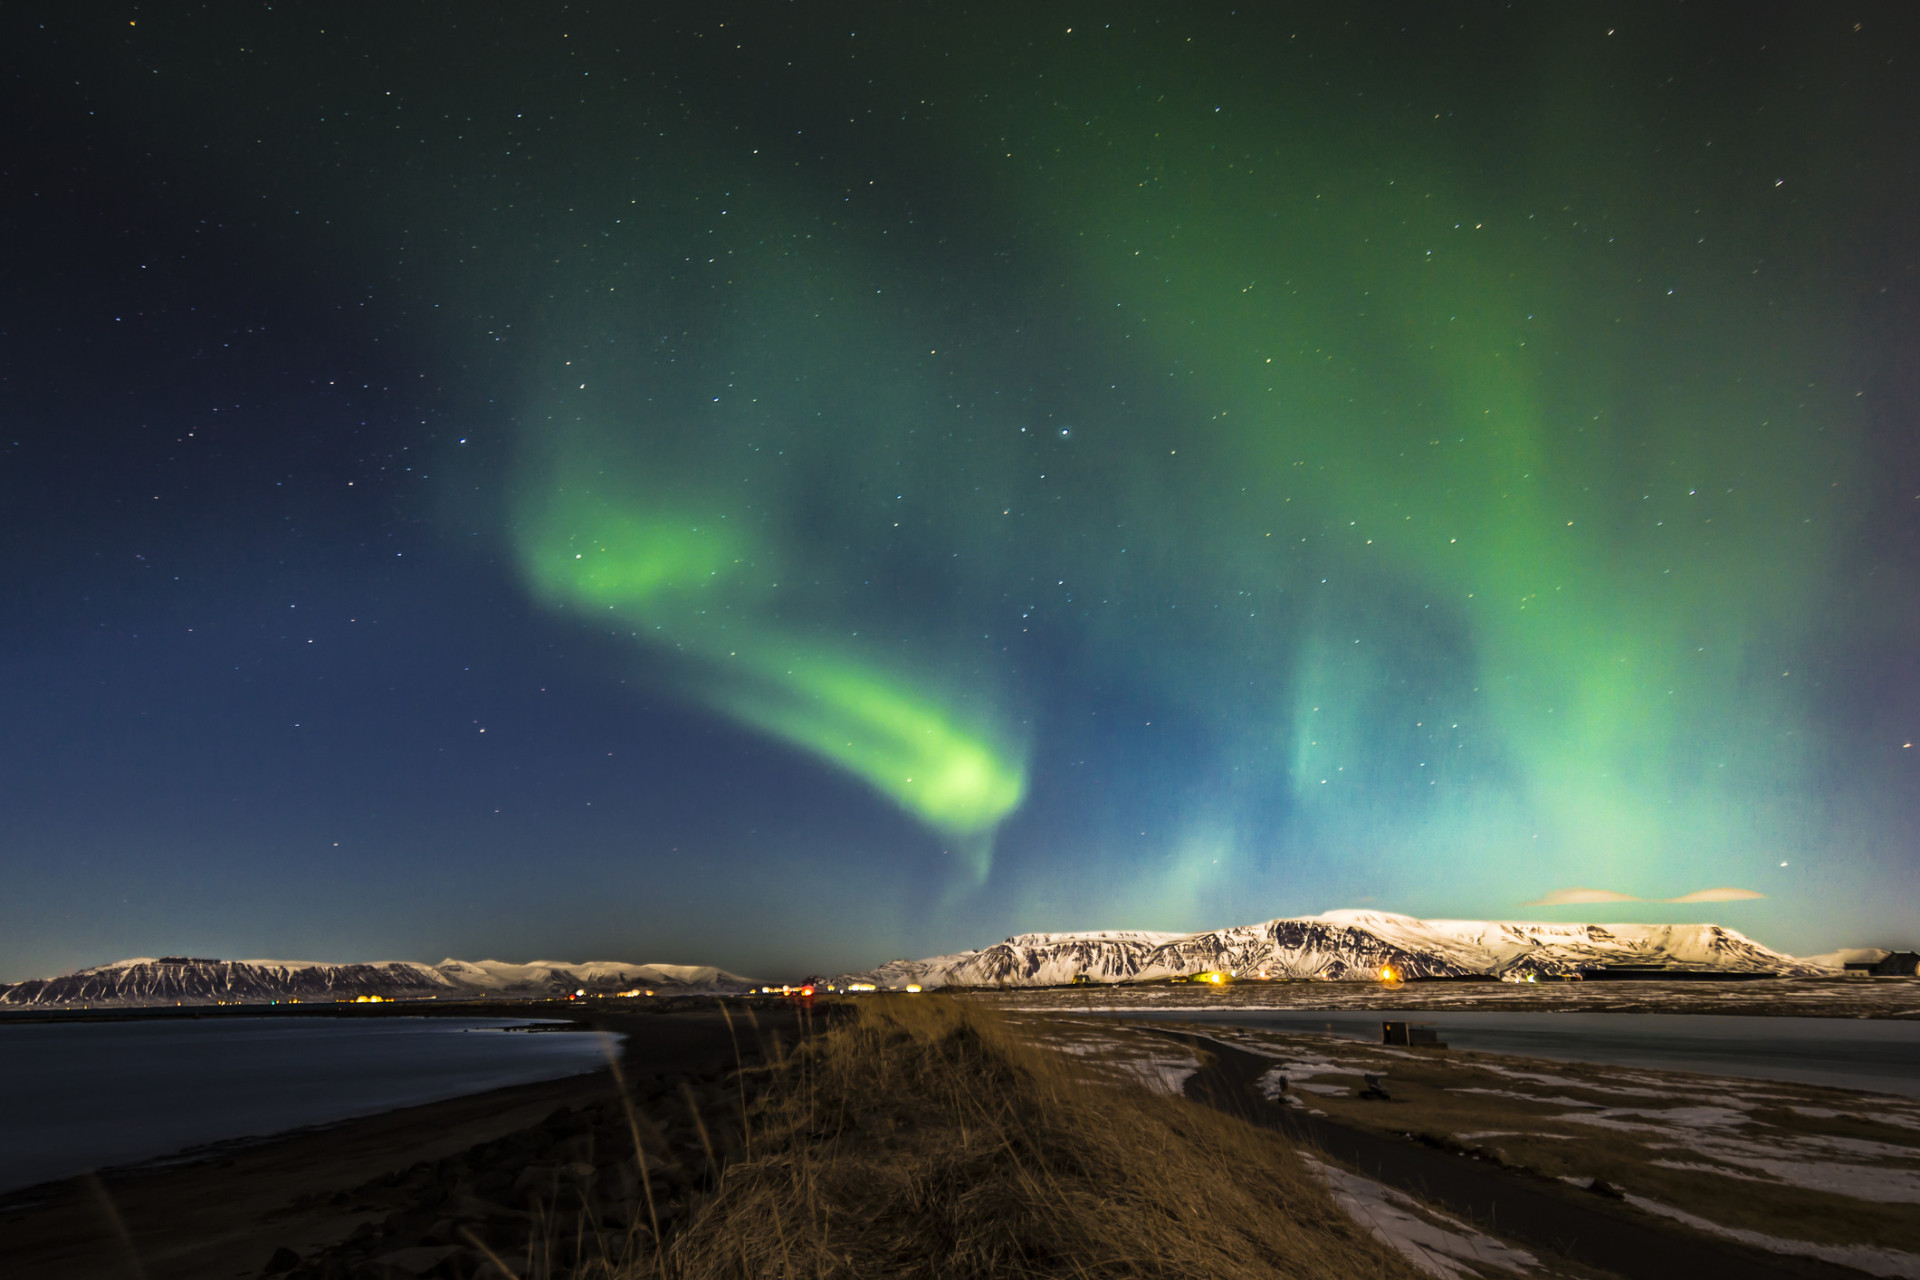 L’Islande est l’un des meilleurs endroits dans le monde pour admirer les aurores boréales.<p><a href="https://www.msn.com/fr-fr/community/channel/vid-7xx8mnucu55yw63we9va2gwr7uihbxwc68fxqp25x6tg4ftibpra?cvid=94631541bc0f4f89bfd59158d696ad7e">Suivez-nous et accédez tous les jours à du contenu exclusif</a></p>